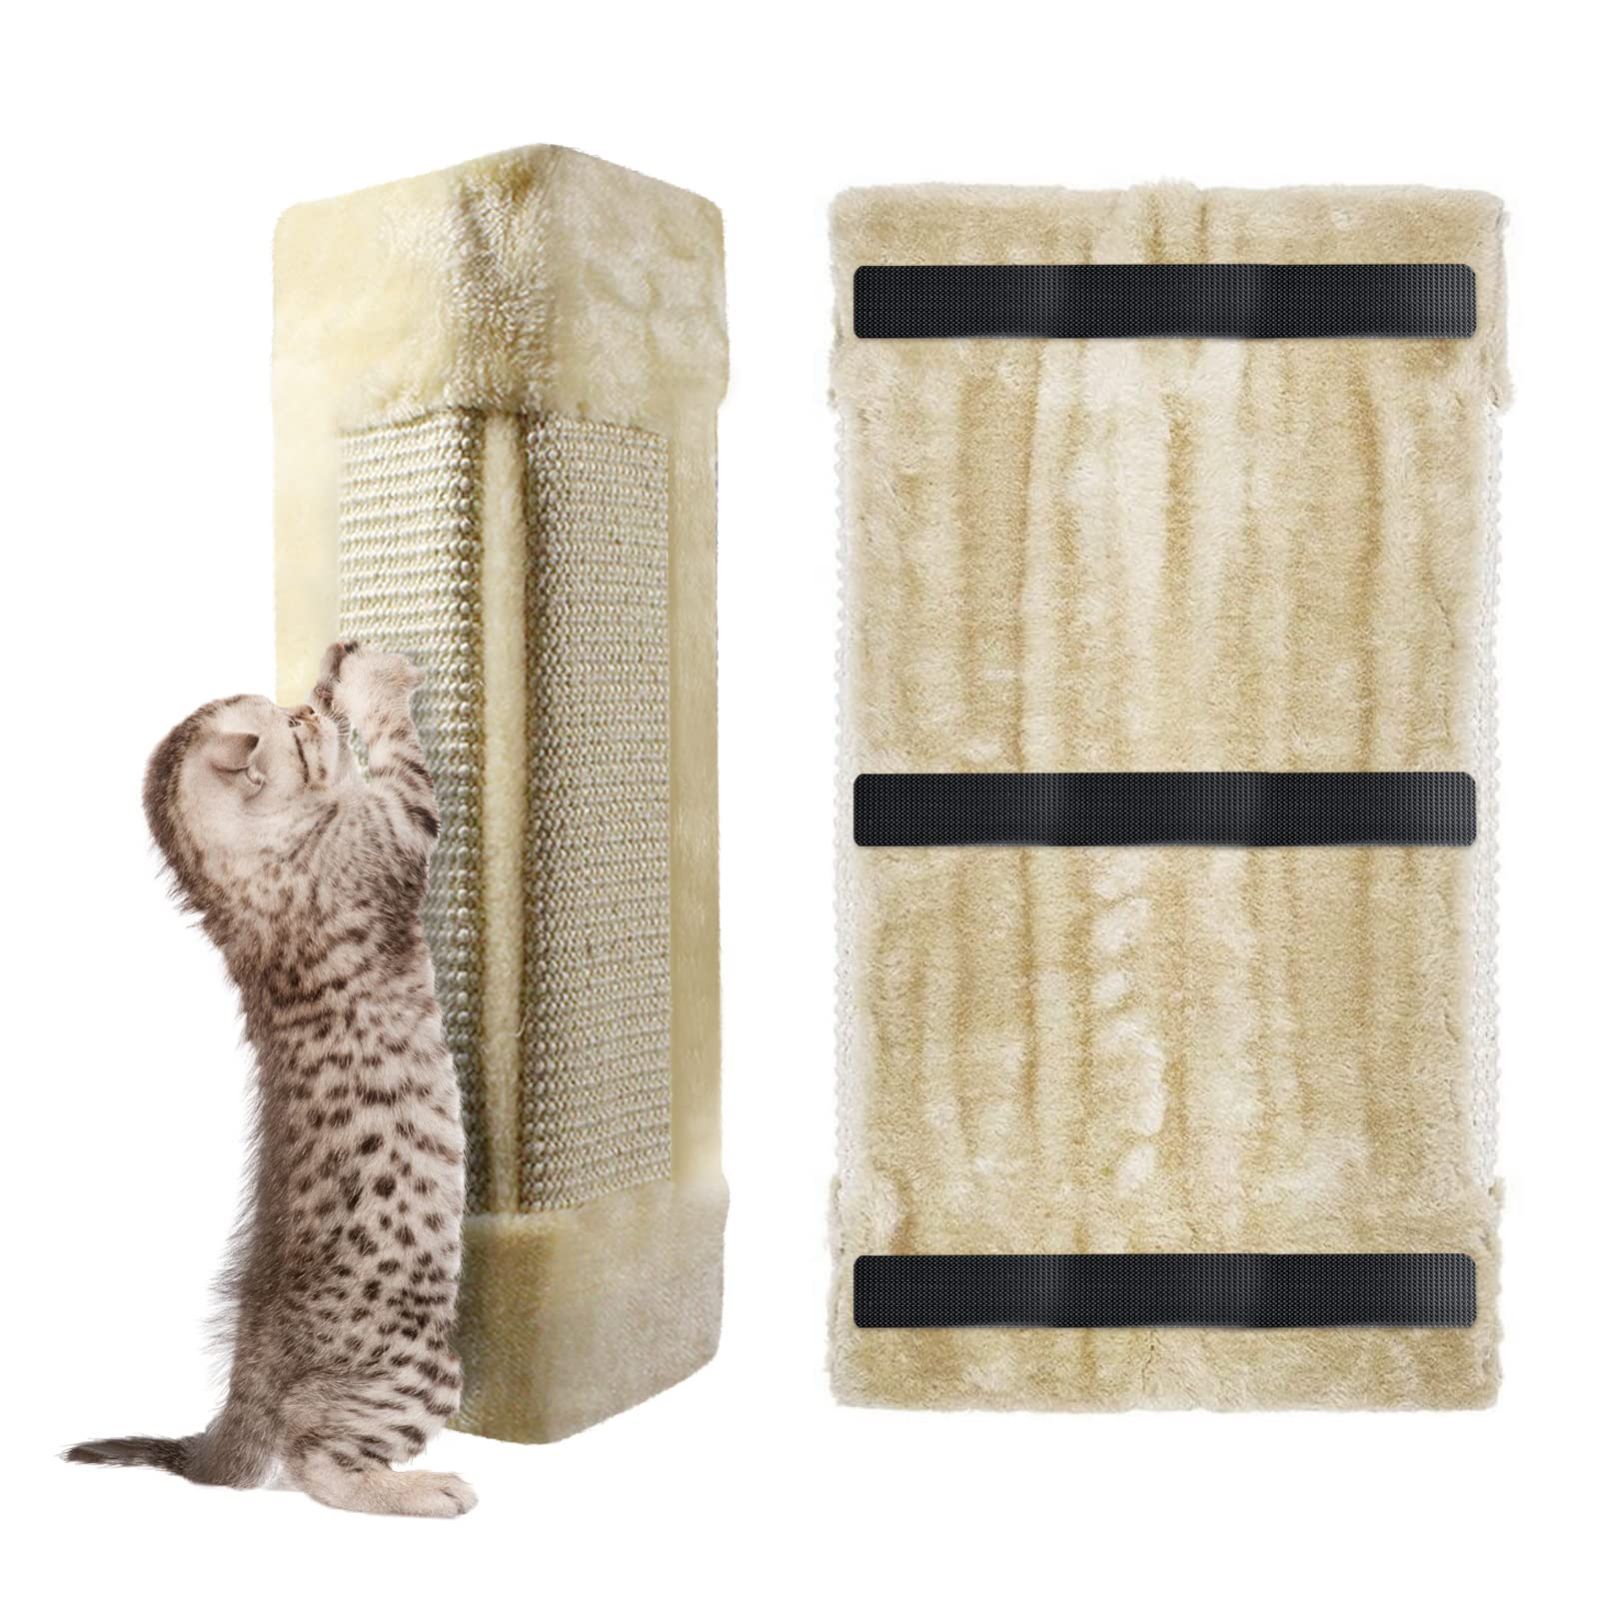 猫 つめとぎねこ 壁掛け 防止シート壁 柱 家具 保護 猫 爪研ぎ 耐久 運動不